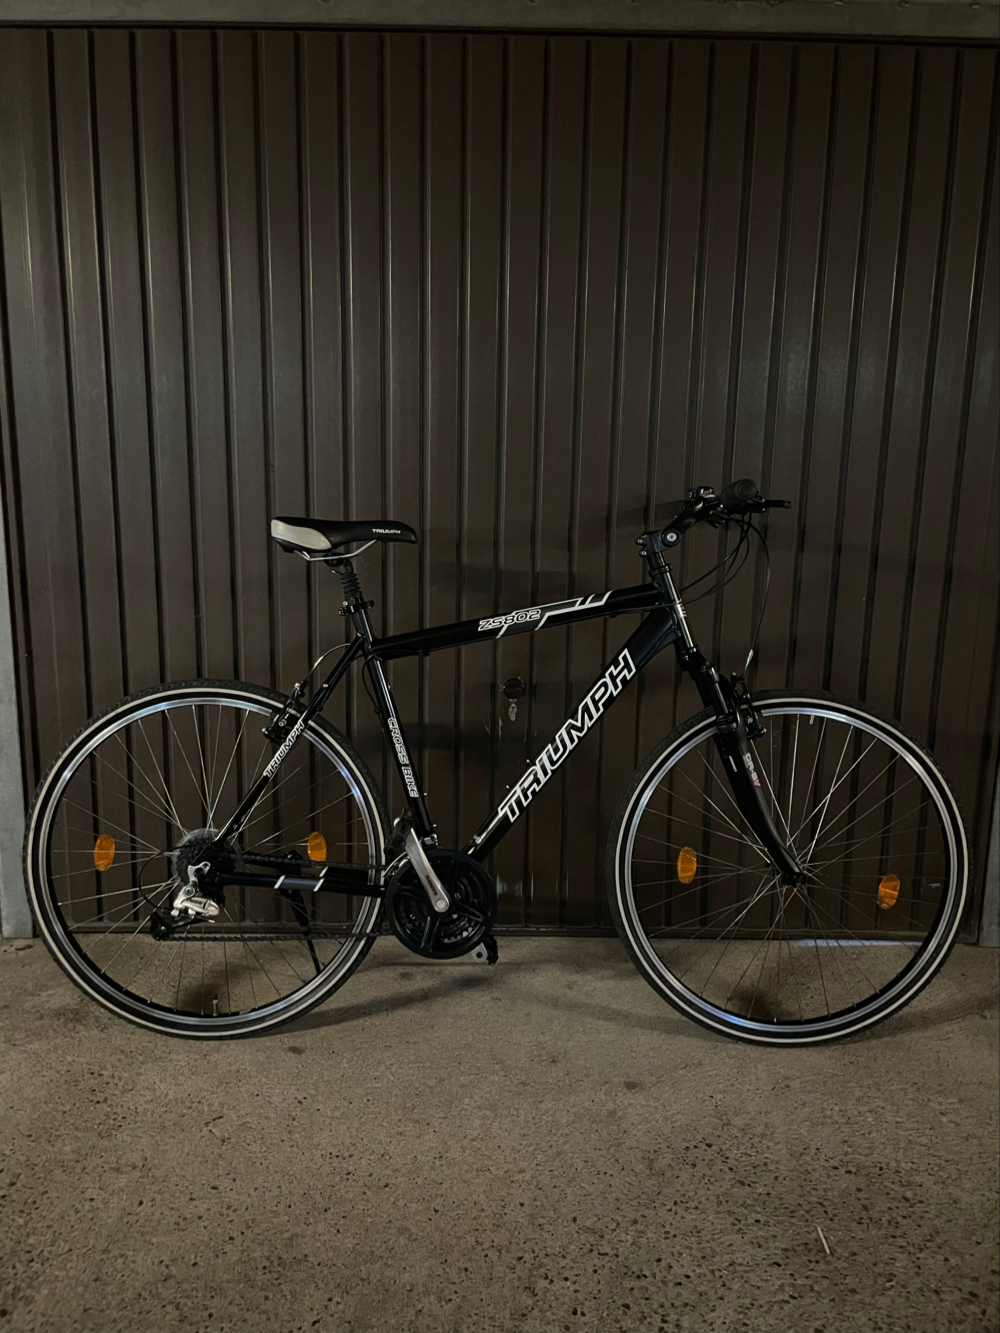 28" Zoll Cross-Bike Aluminium (Firma TRIUMPH)21Gänge wie neu.